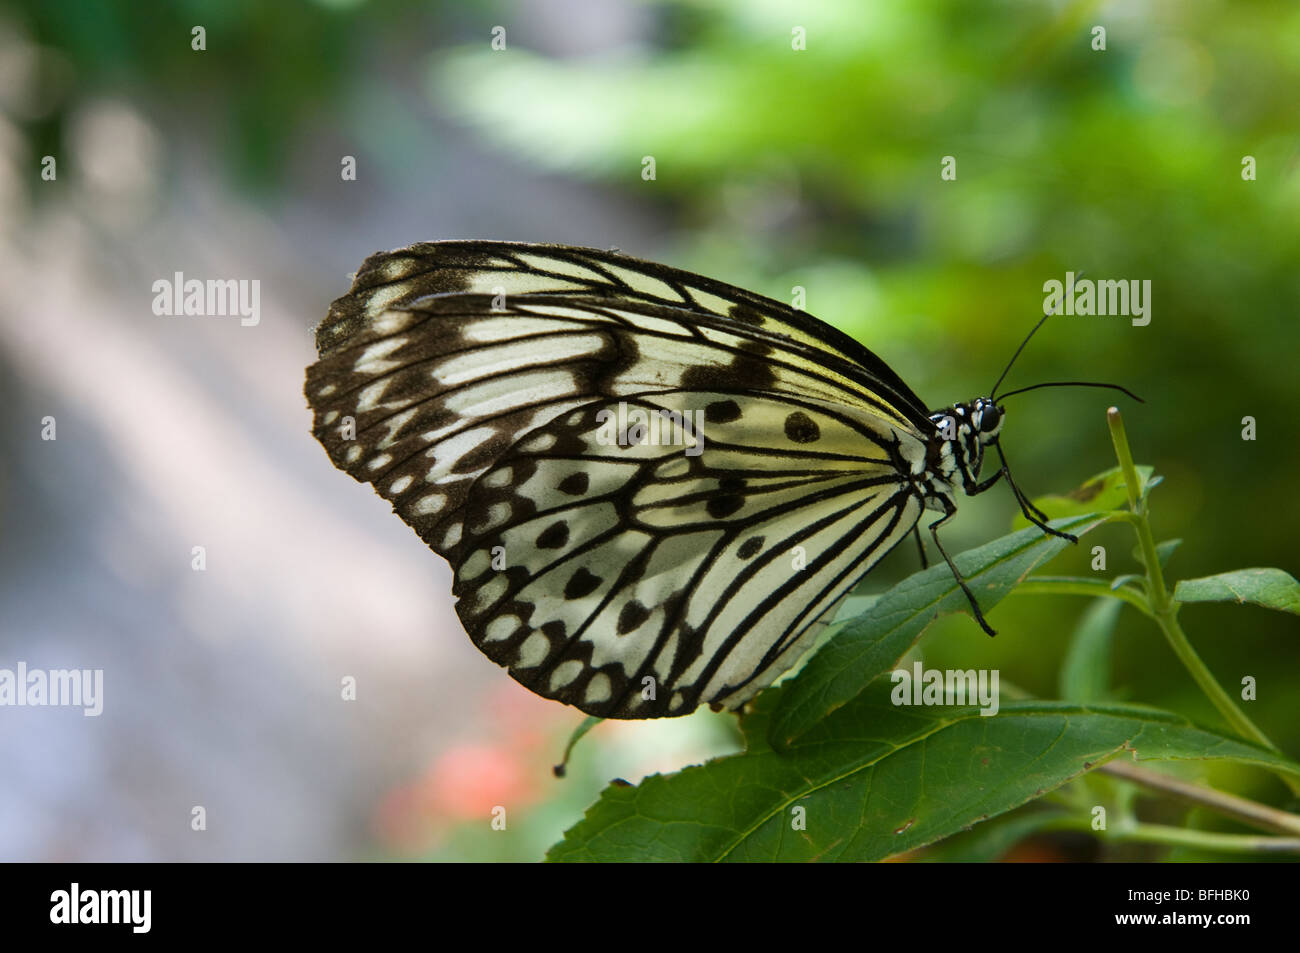 Arbre généalogique blanche papillon nymphe Banque D'Images